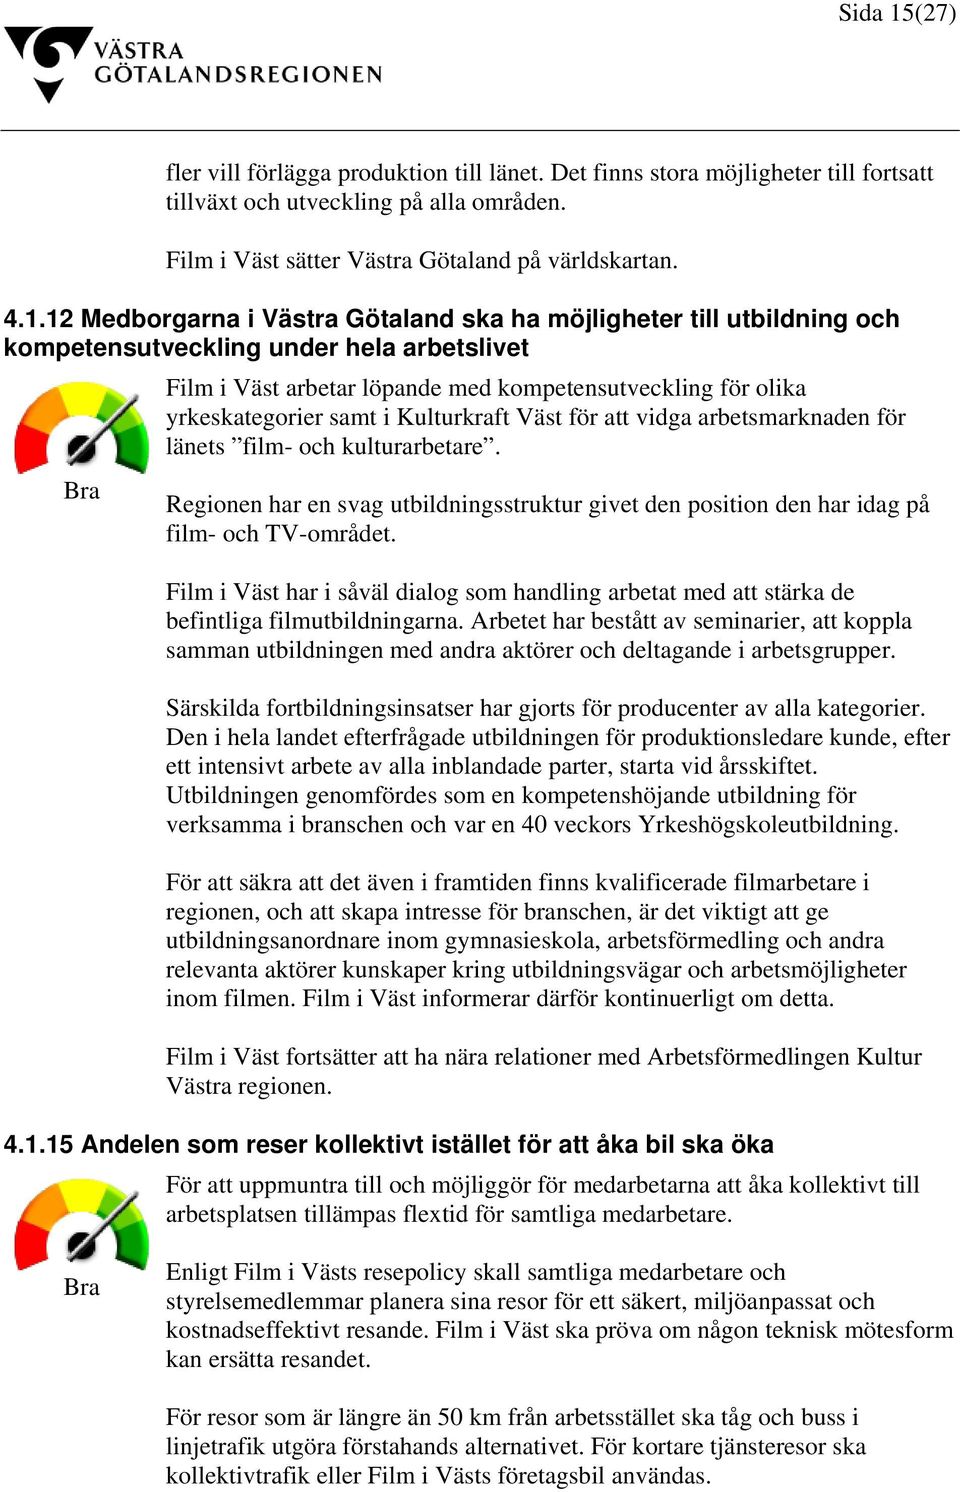 12 Medborgarna i Västra Götaland ska ha möjligheter till utbildning och kompetensutveckling under hela arbetslivet Bra Film i Väst arbetar löpande med kompetensutveckling för olika yrkeskategorier